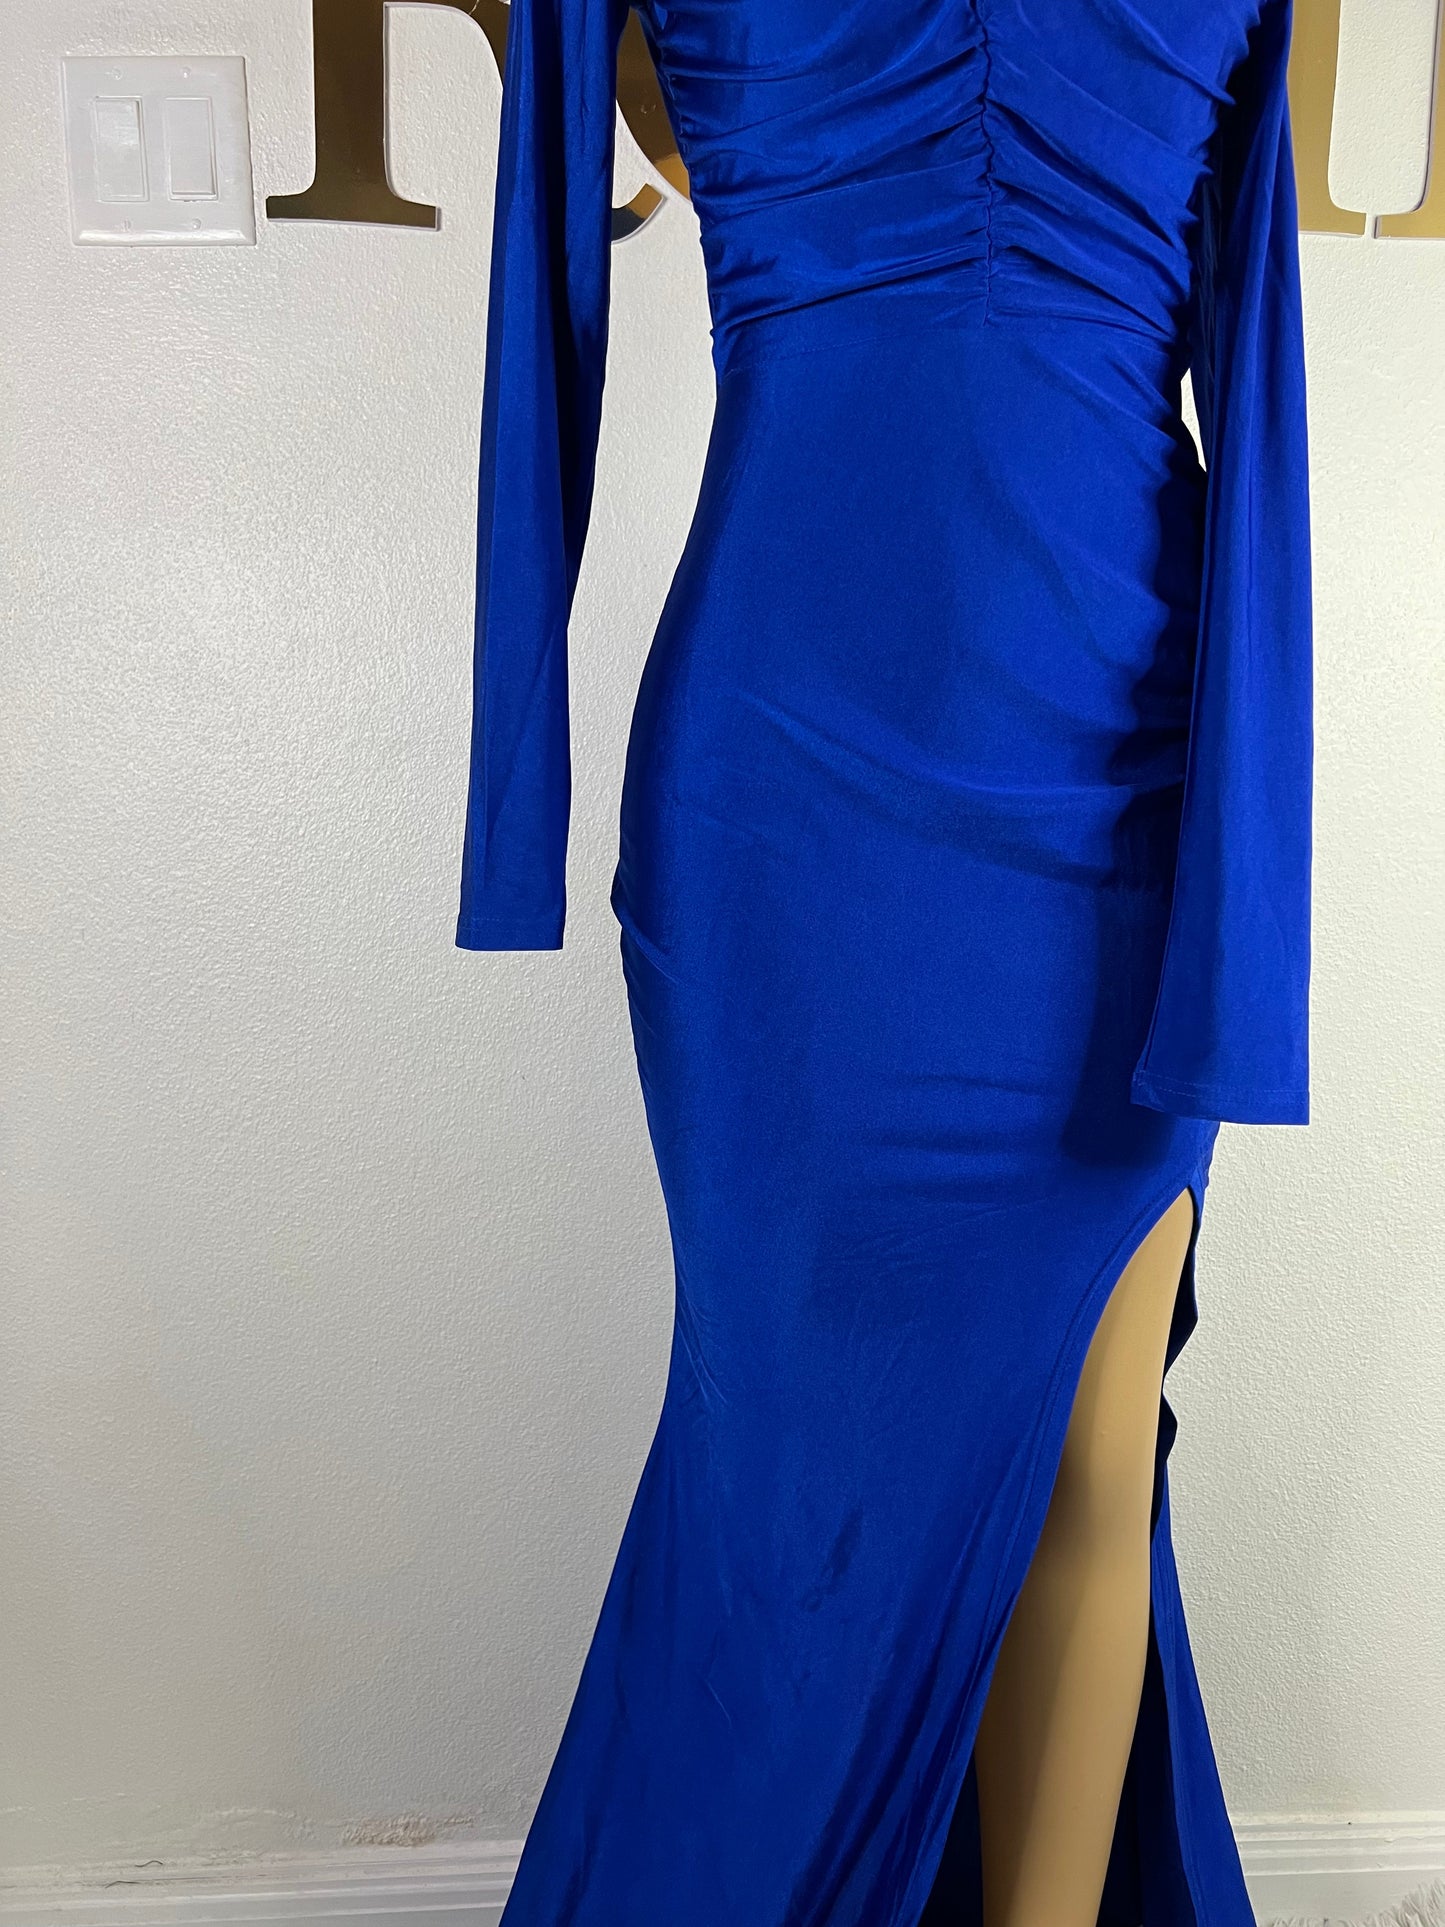 Kerry Elle Dress (Blue)